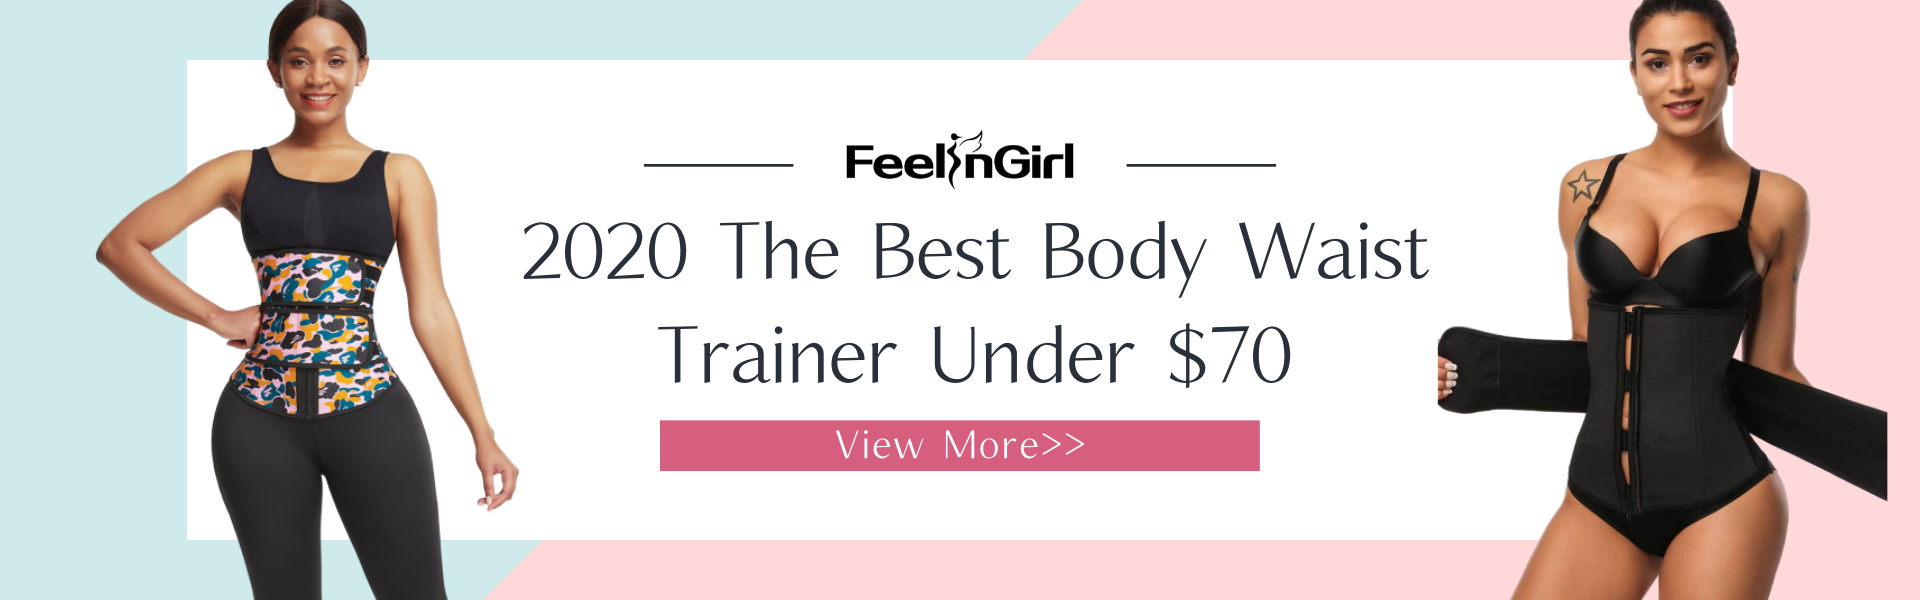 2020 The Best Body Waist Trainer Under $70